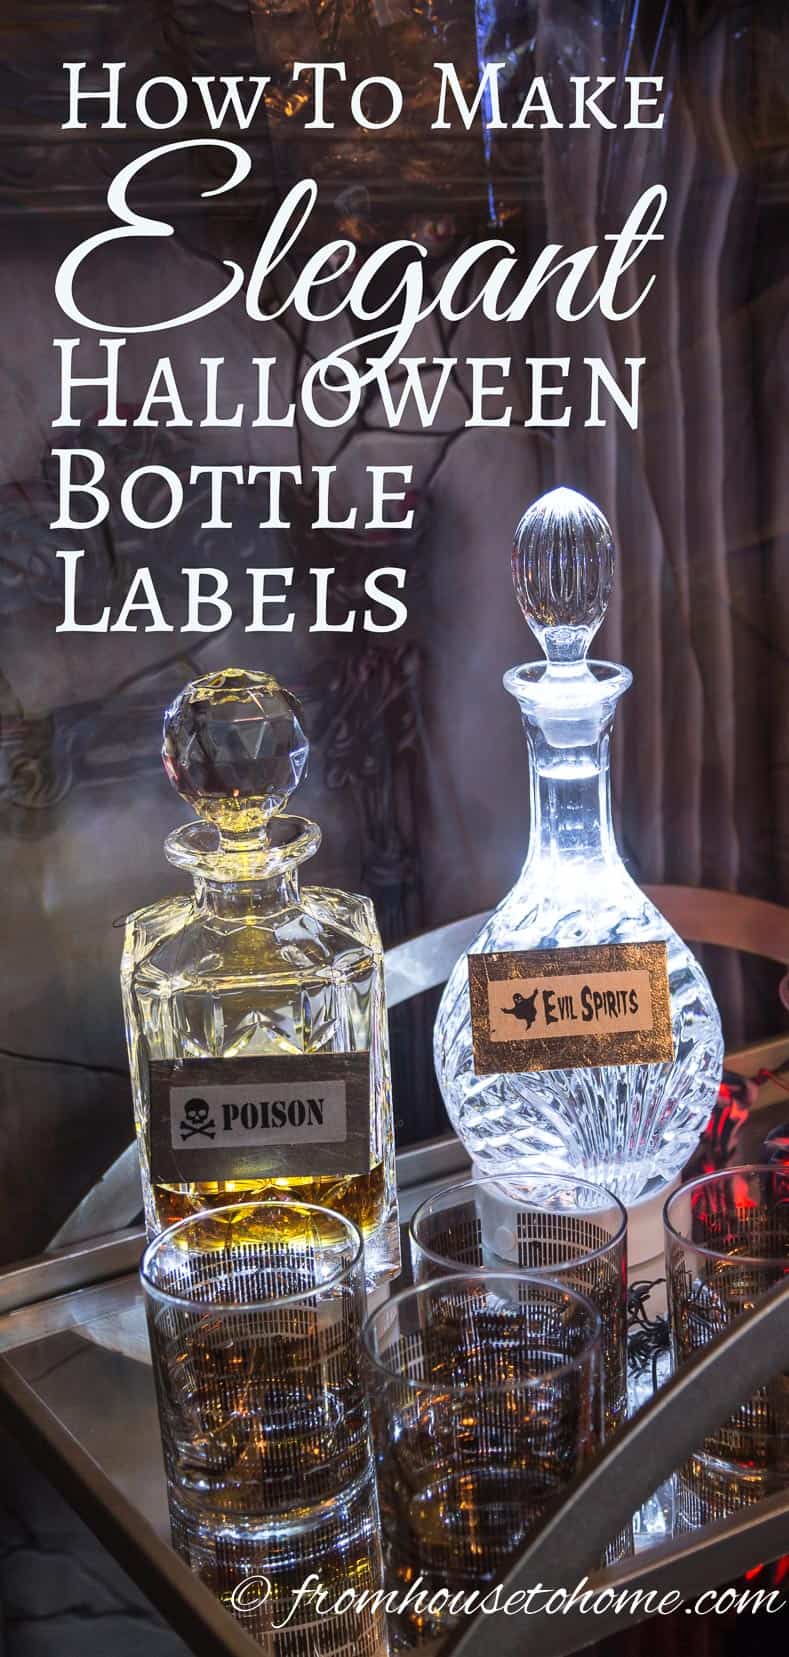 How to make elegant Halloween bottle labels